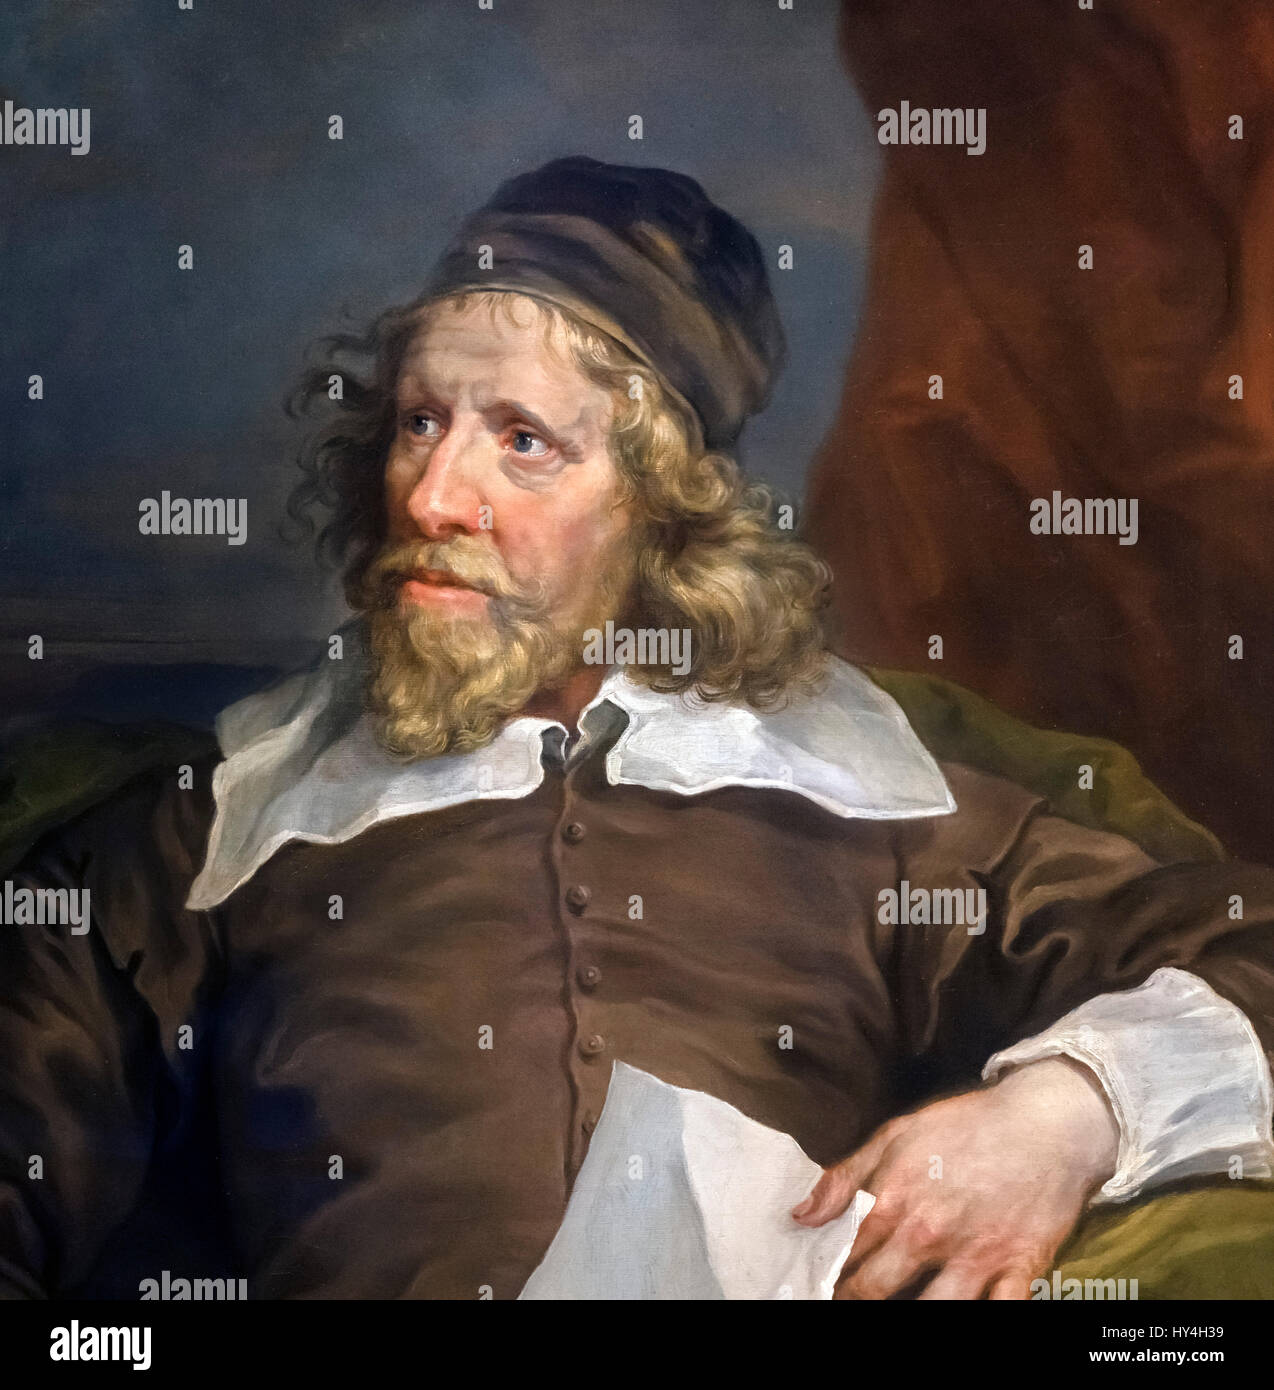 Inigo Jones. Ritratto del xvii secolo architetto inglese Inigo Jones (1573-1652) da William Hogarth, olio su tela, 1757-58. Dettaglio di un dipinto di grandi dimensioni, HY4H3C. Foto Stock